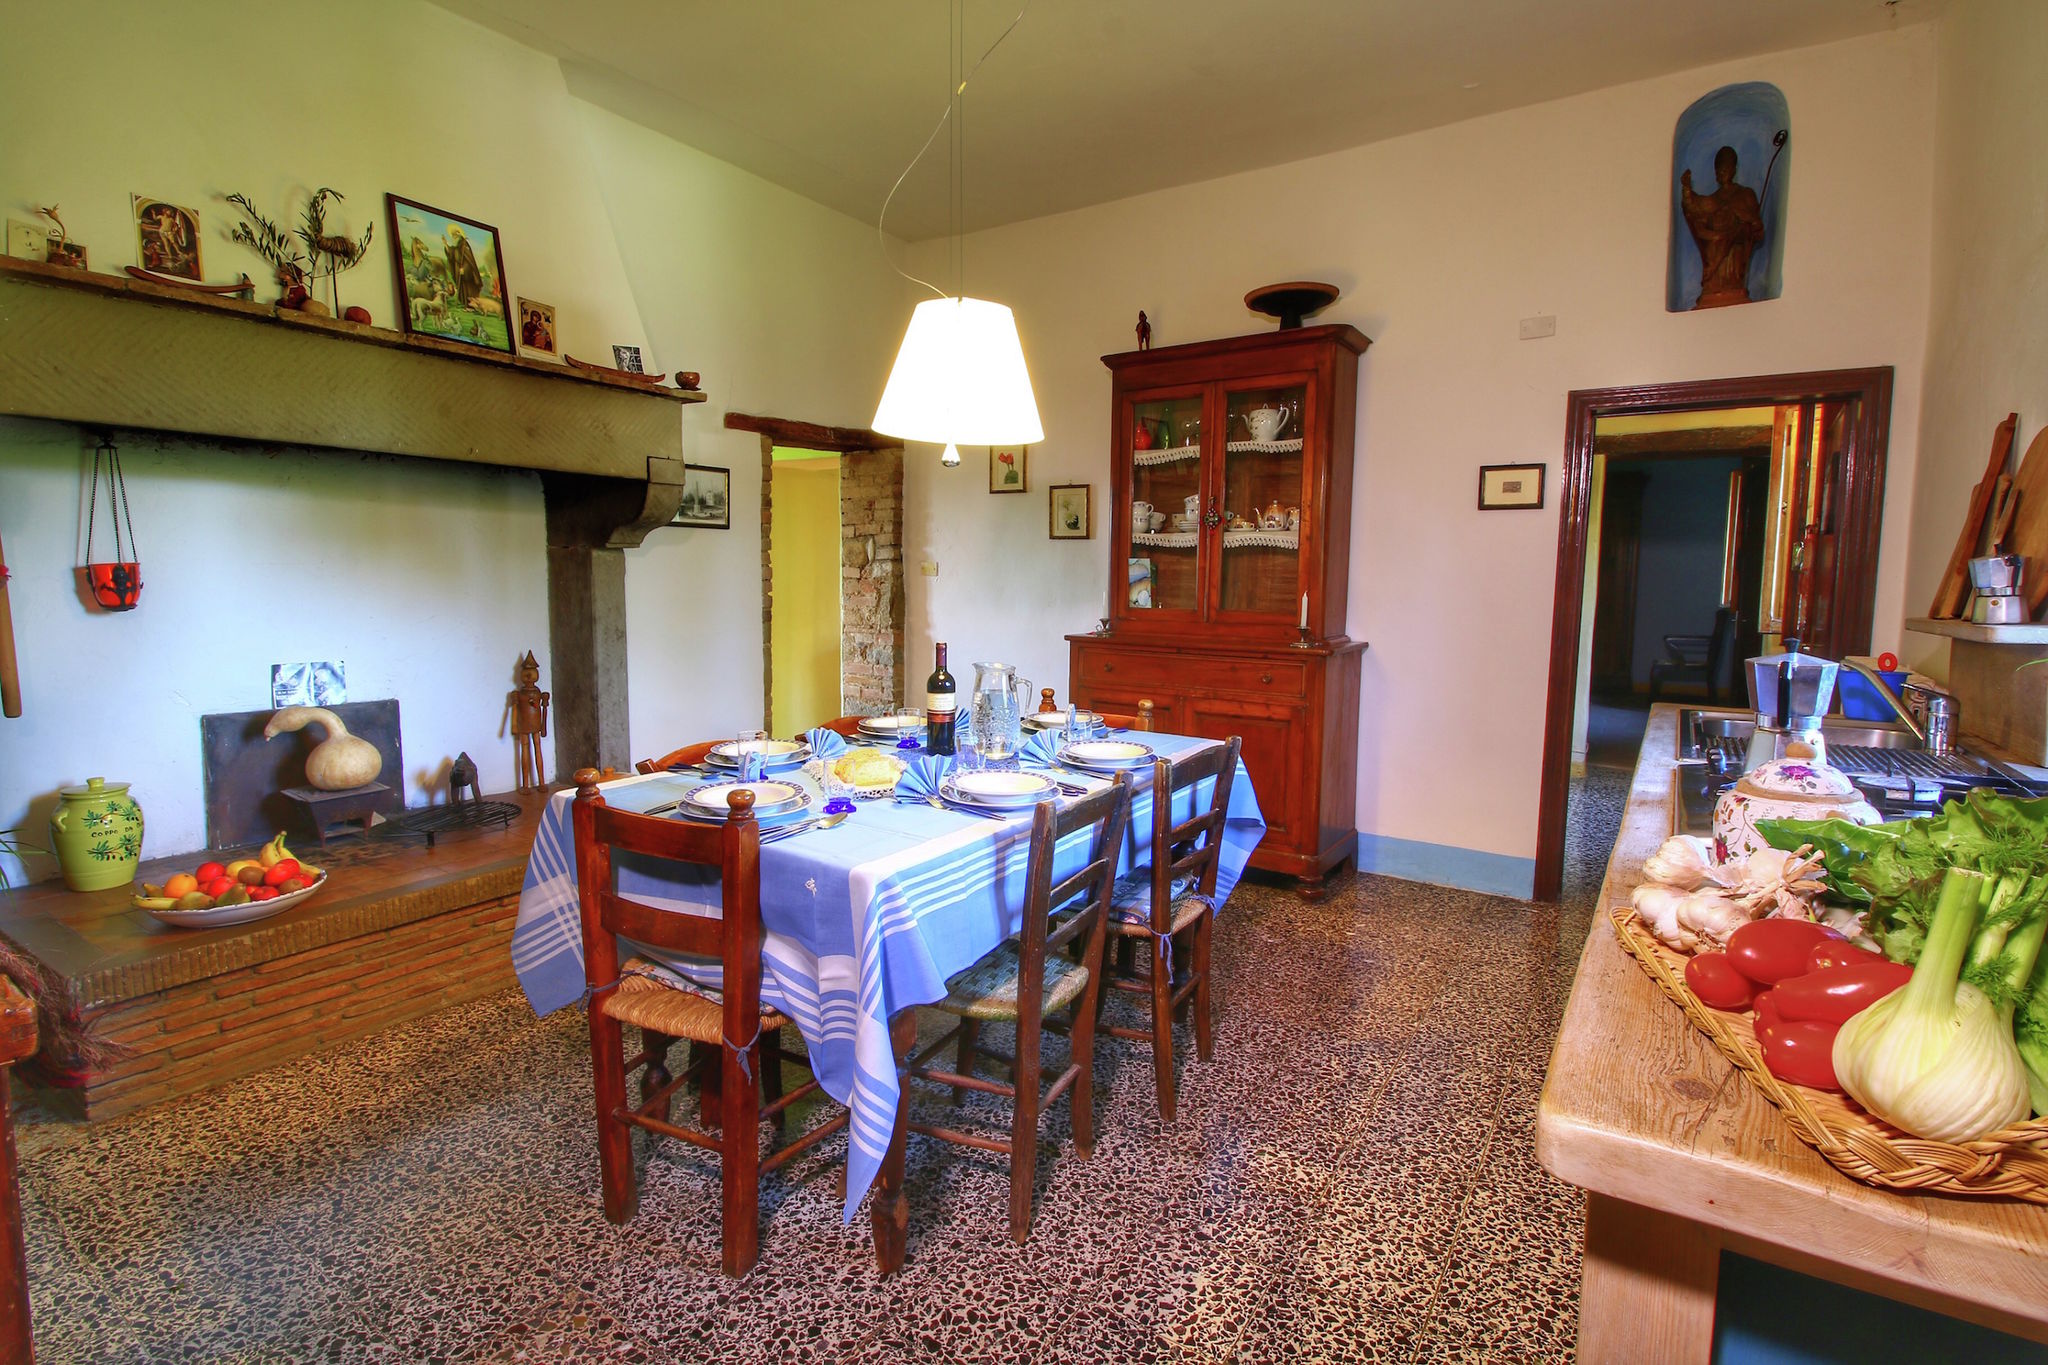 Luxuriöses Ferienhaus in der anghiarischen Toskana